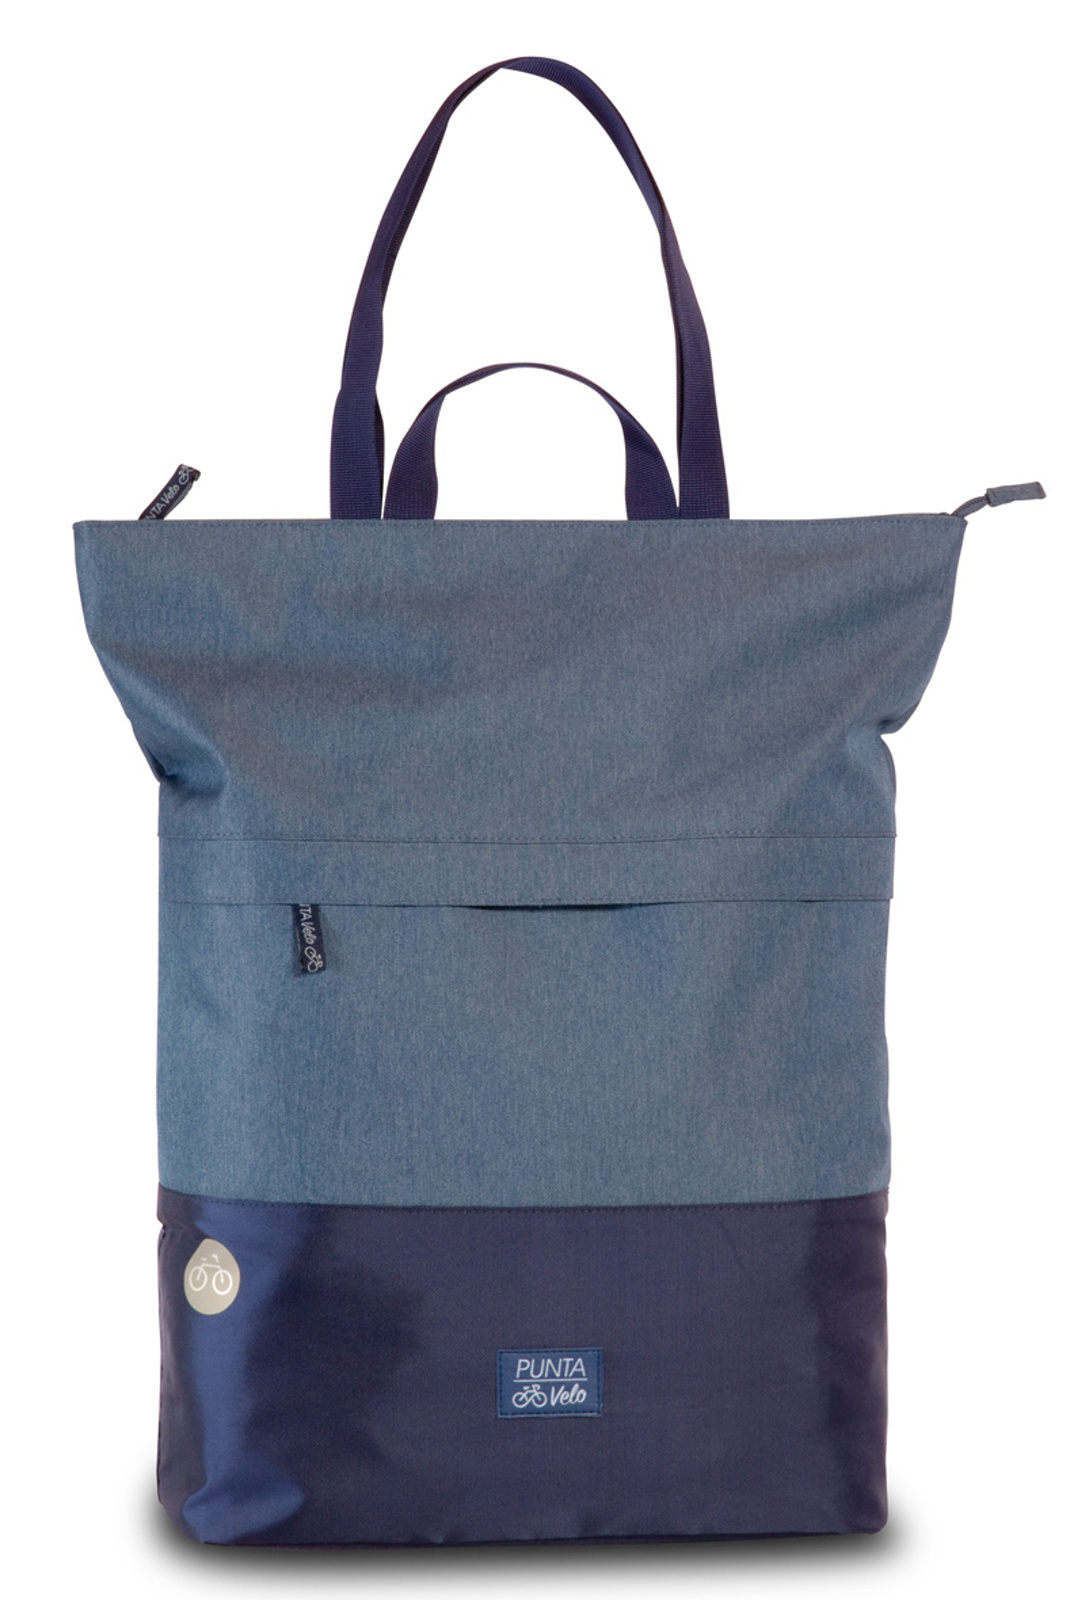 Fabrizio Nákupní taška Punta Velo 10425-5406 27 L modrá